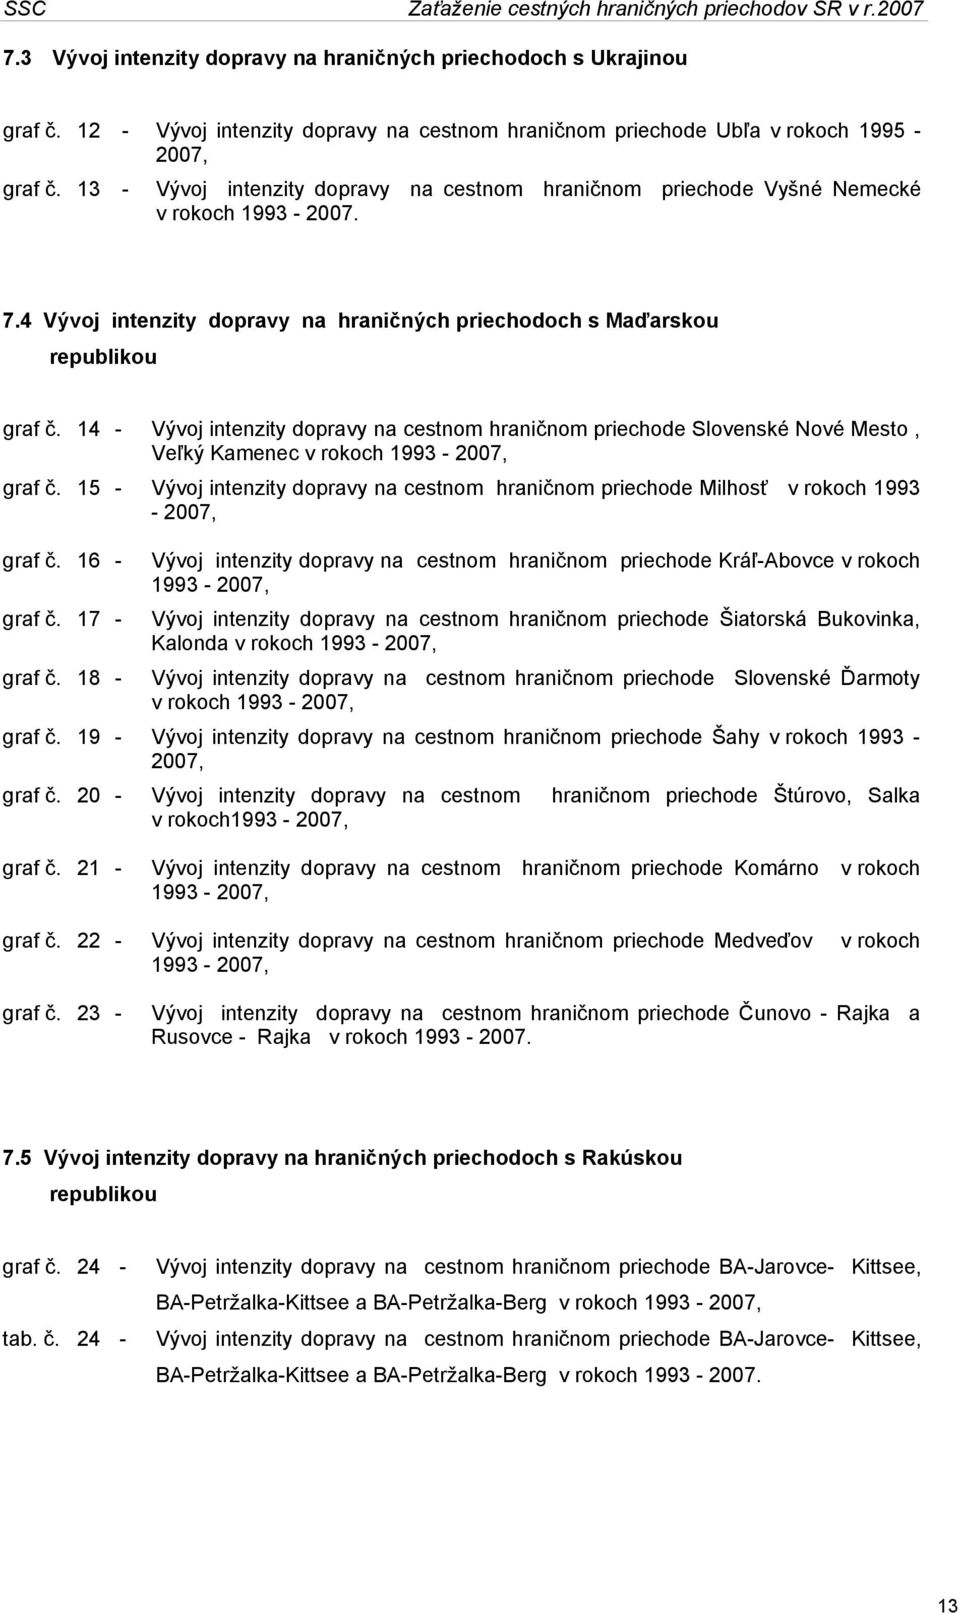 14 - Vývoj intenzity dopravy na cestnom hraničnom priechode Slovenské Nové Mesto, Veľký Kamenec v rokoch 1993-2007, graf č.